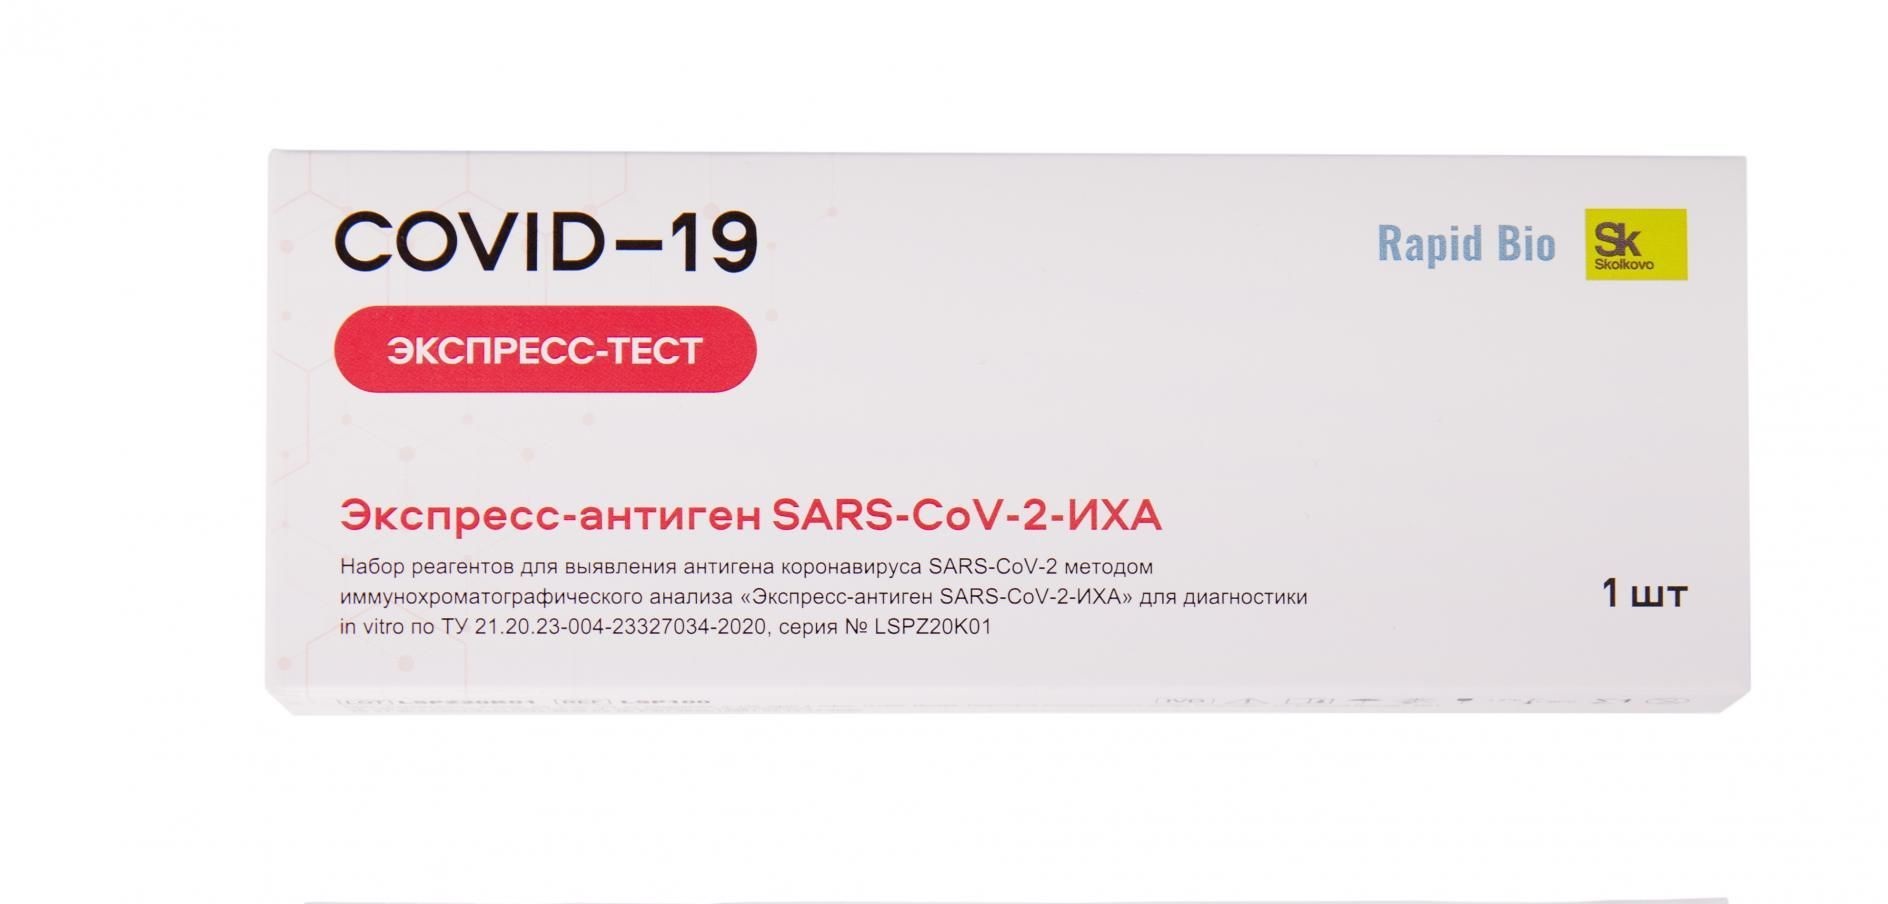 Rapid Bio экспресс-тест для выявления антигена коронавируса SARS-CoV-2